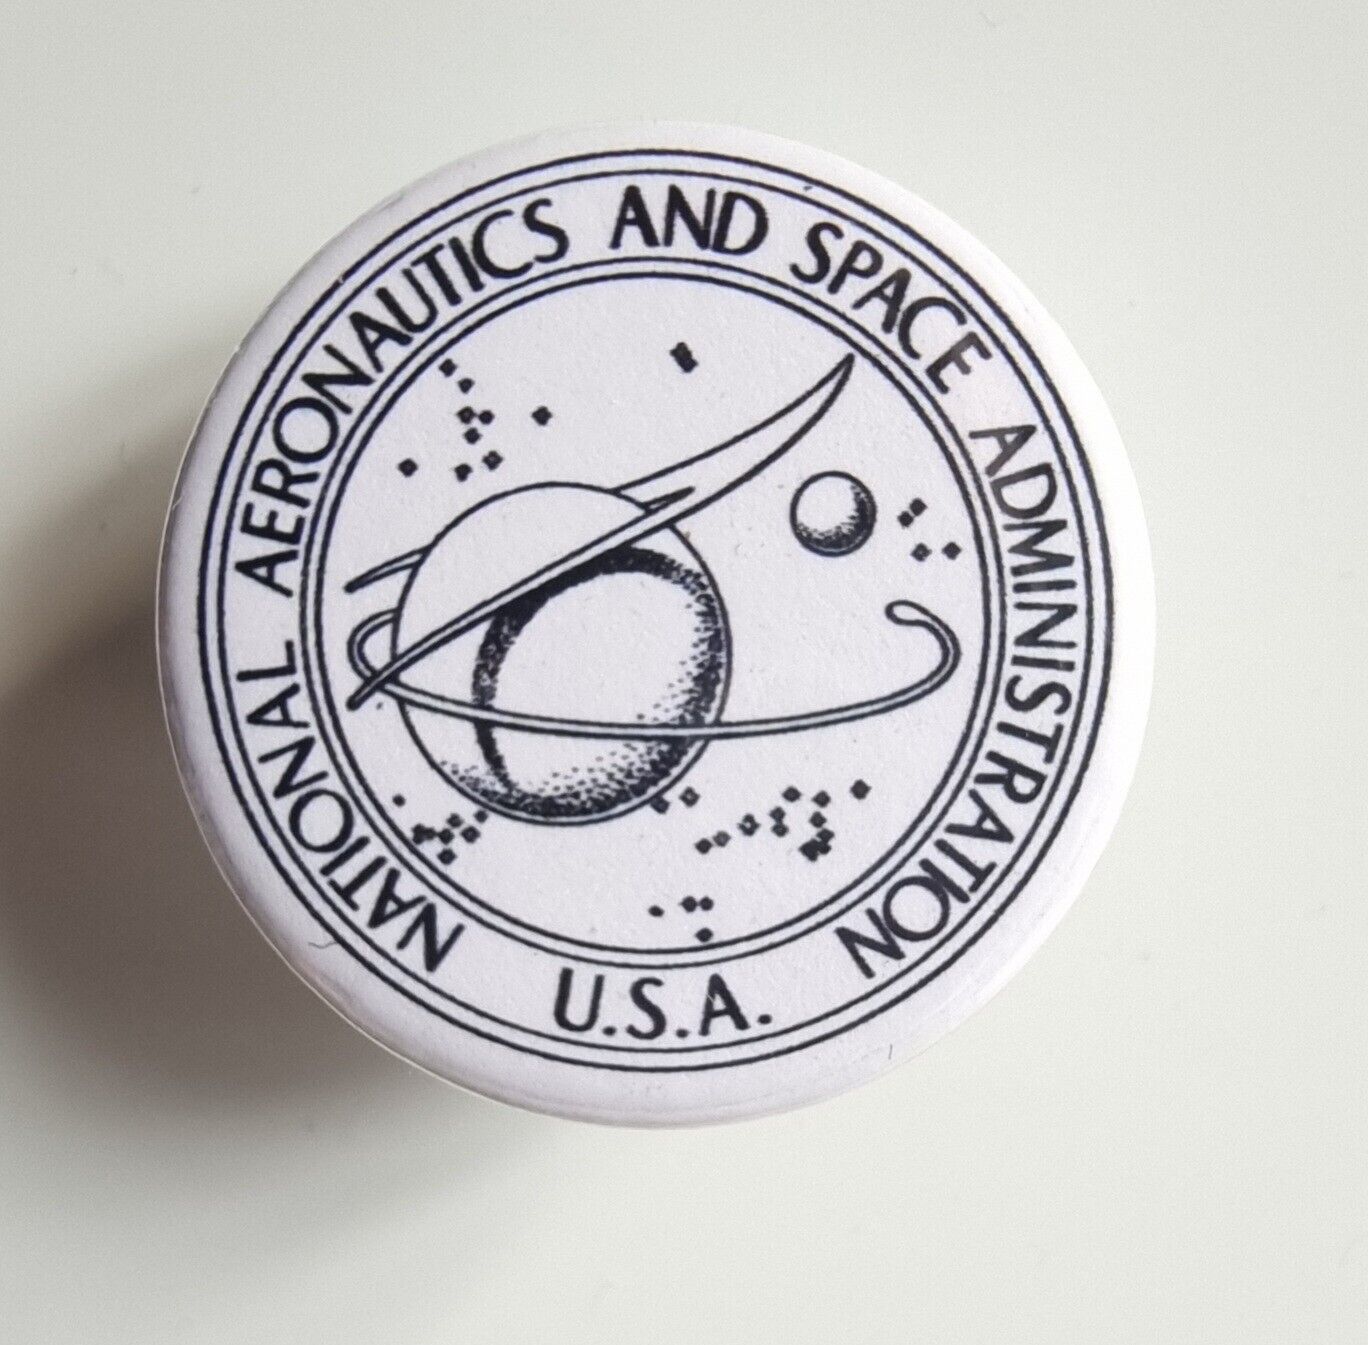 NASA original 1959 Logo - 25mm diameter Small Badge